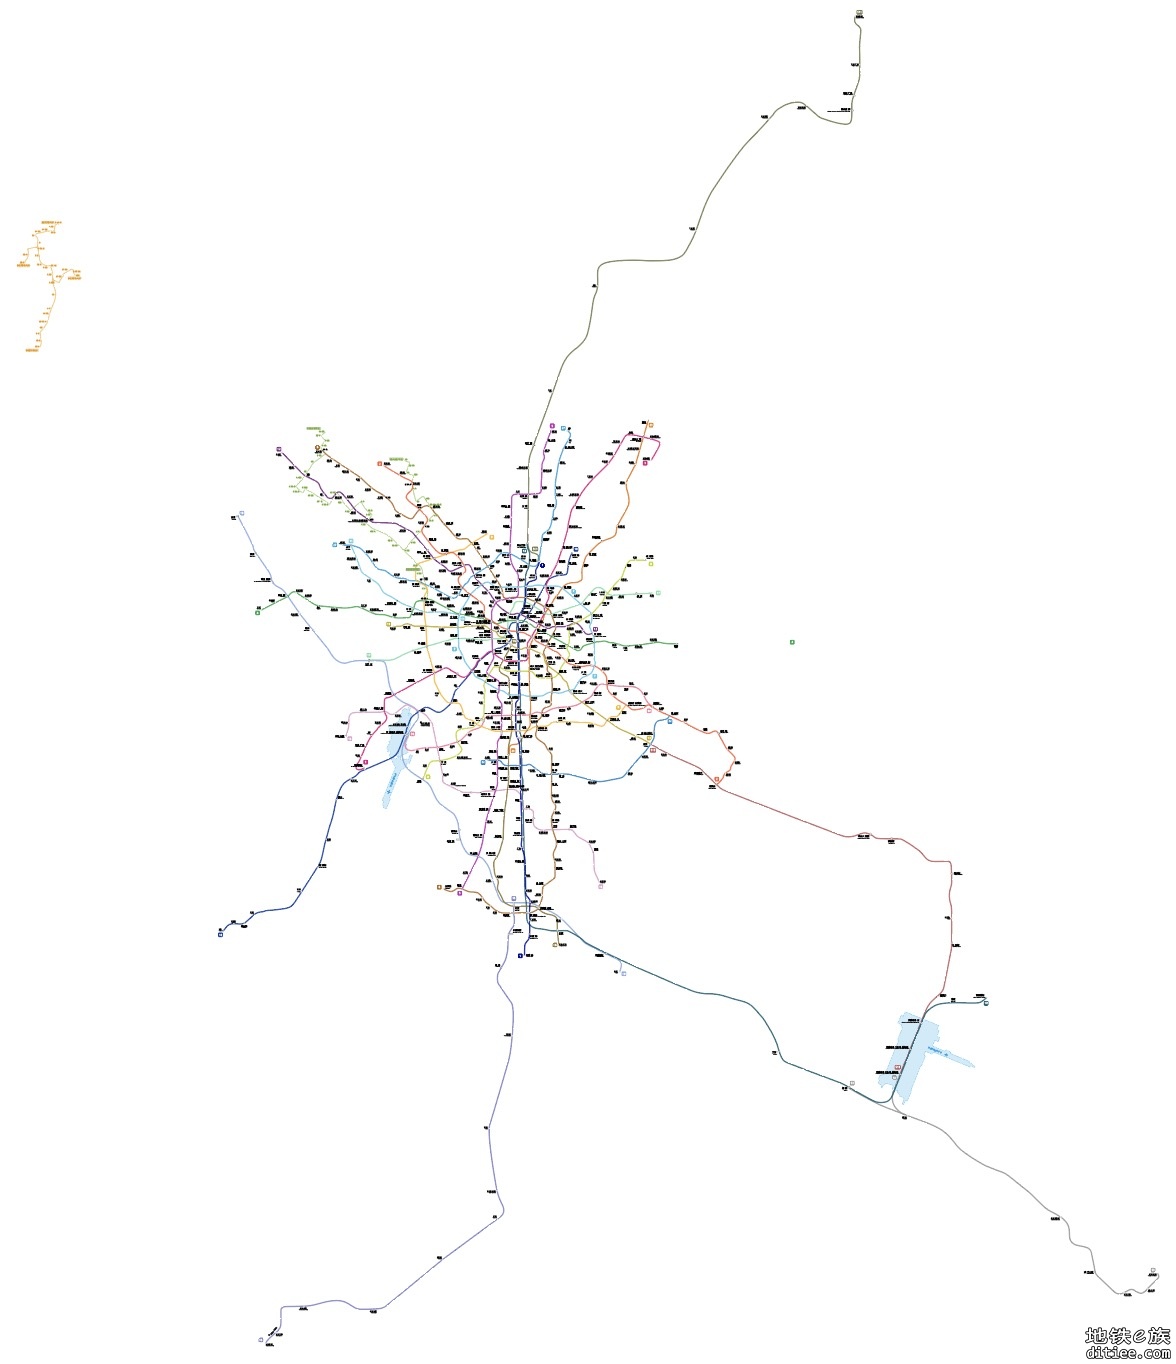 【轨道图RailMap】将我的2050图和网传五期规划做了对比